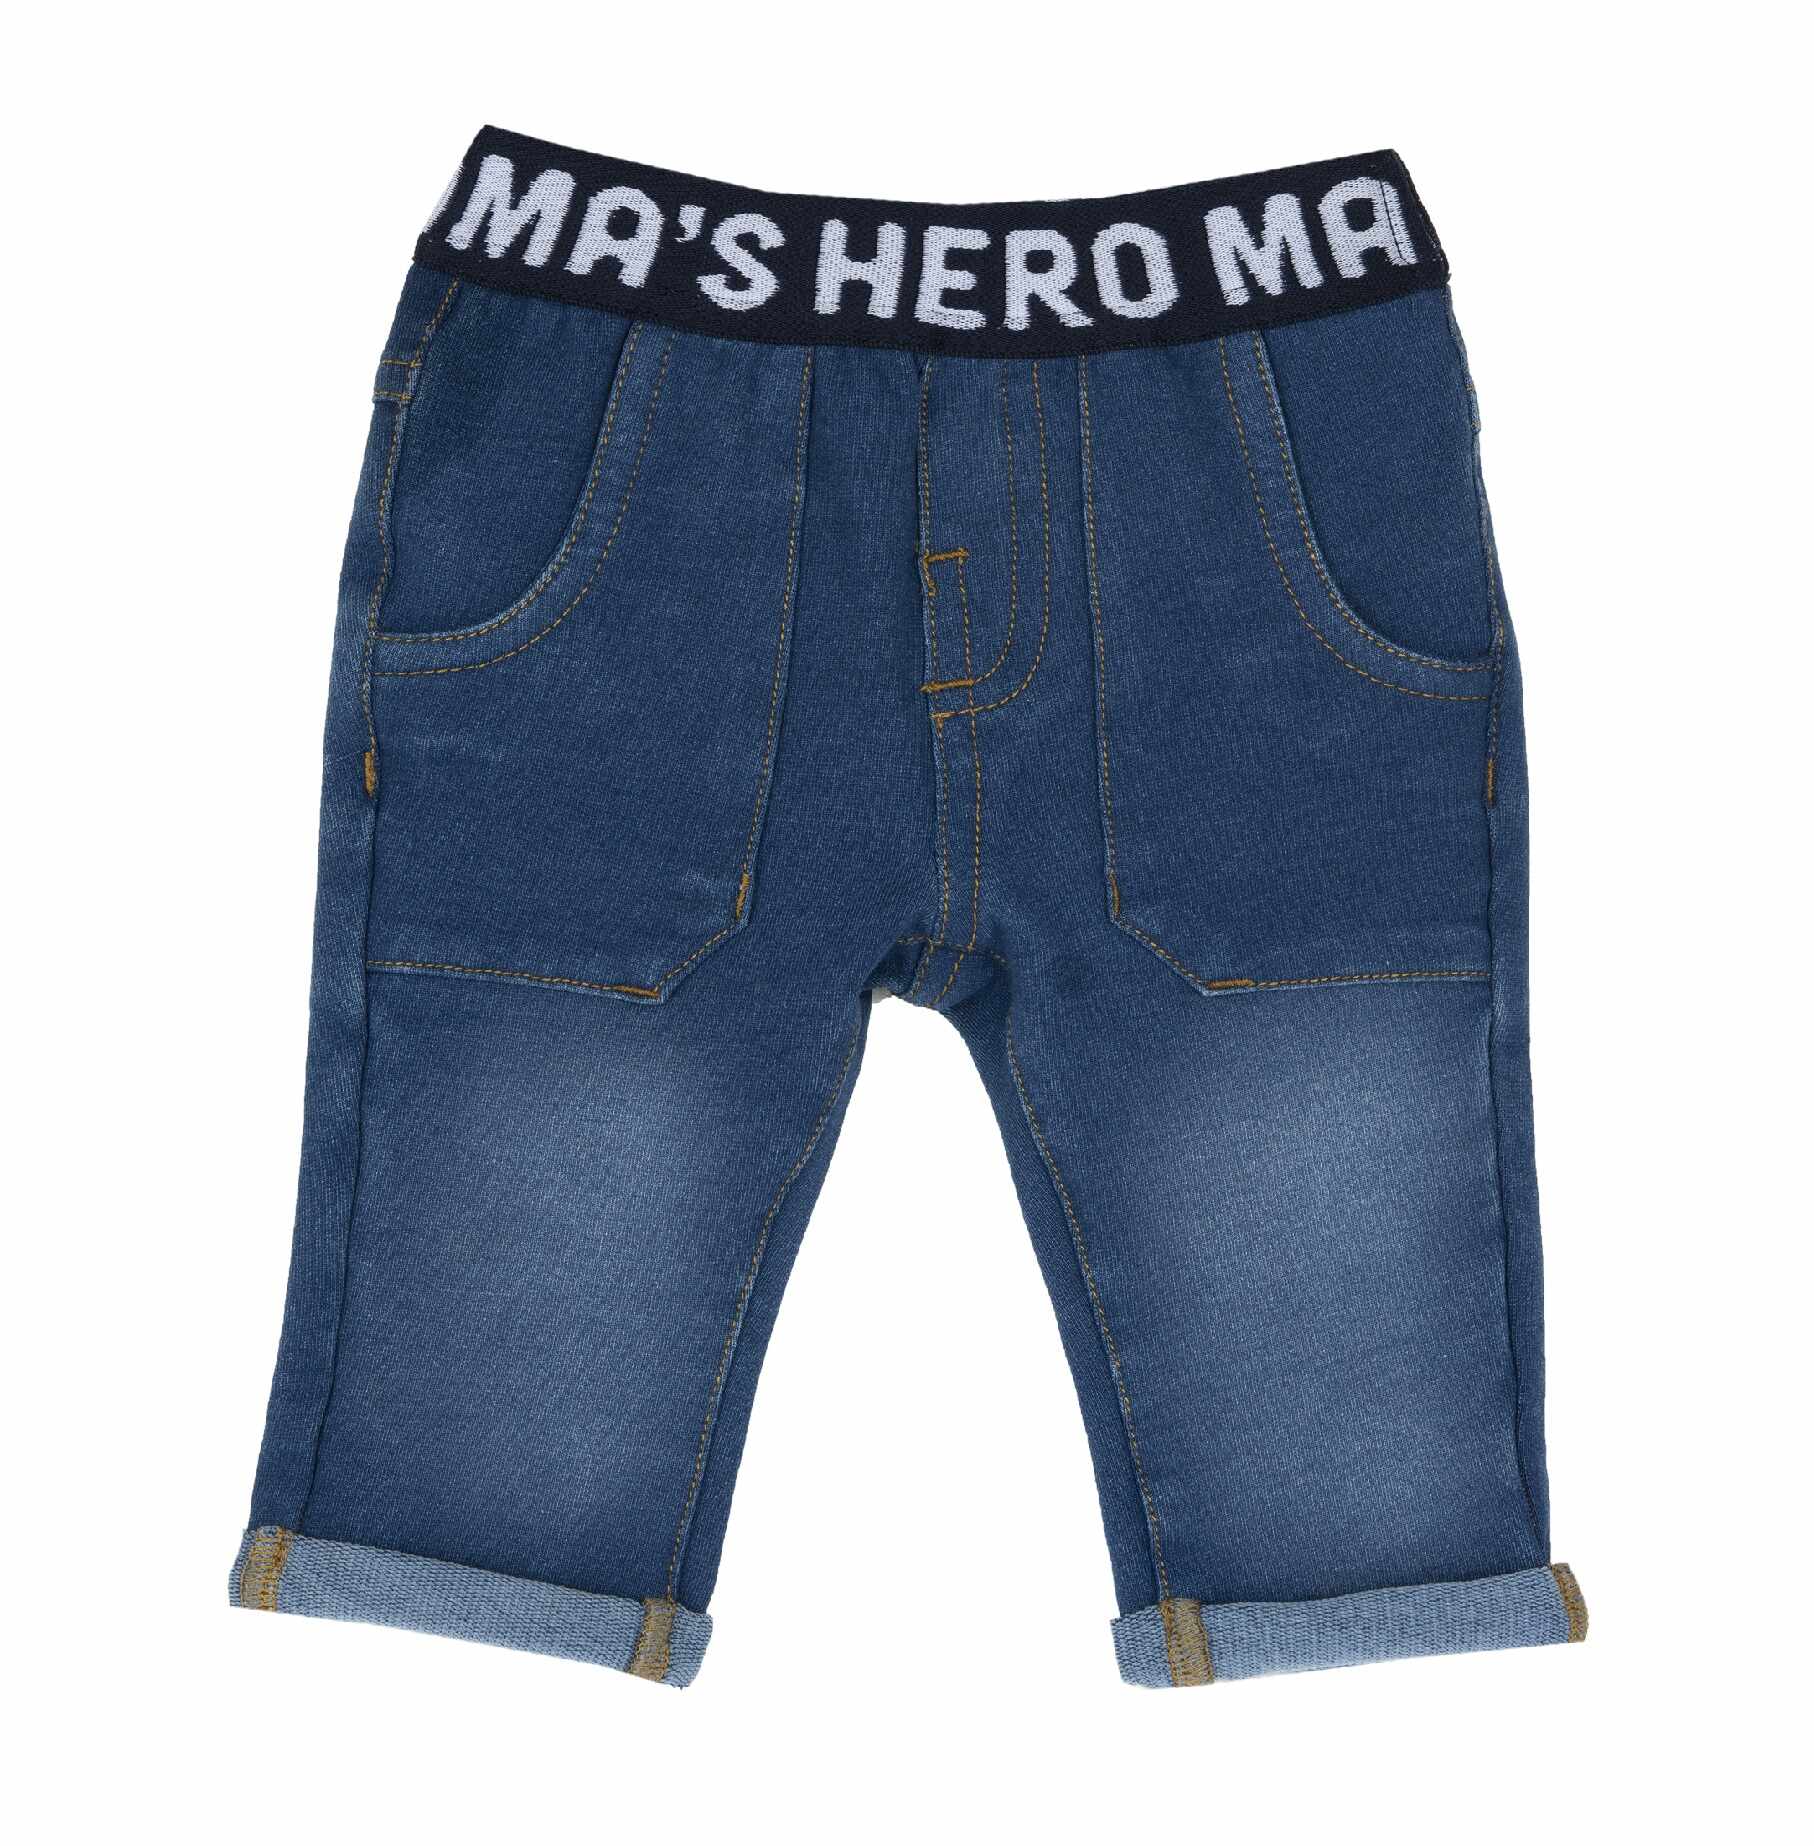 Pantaloni copii Chicco, albastru, 08762-63MFCO